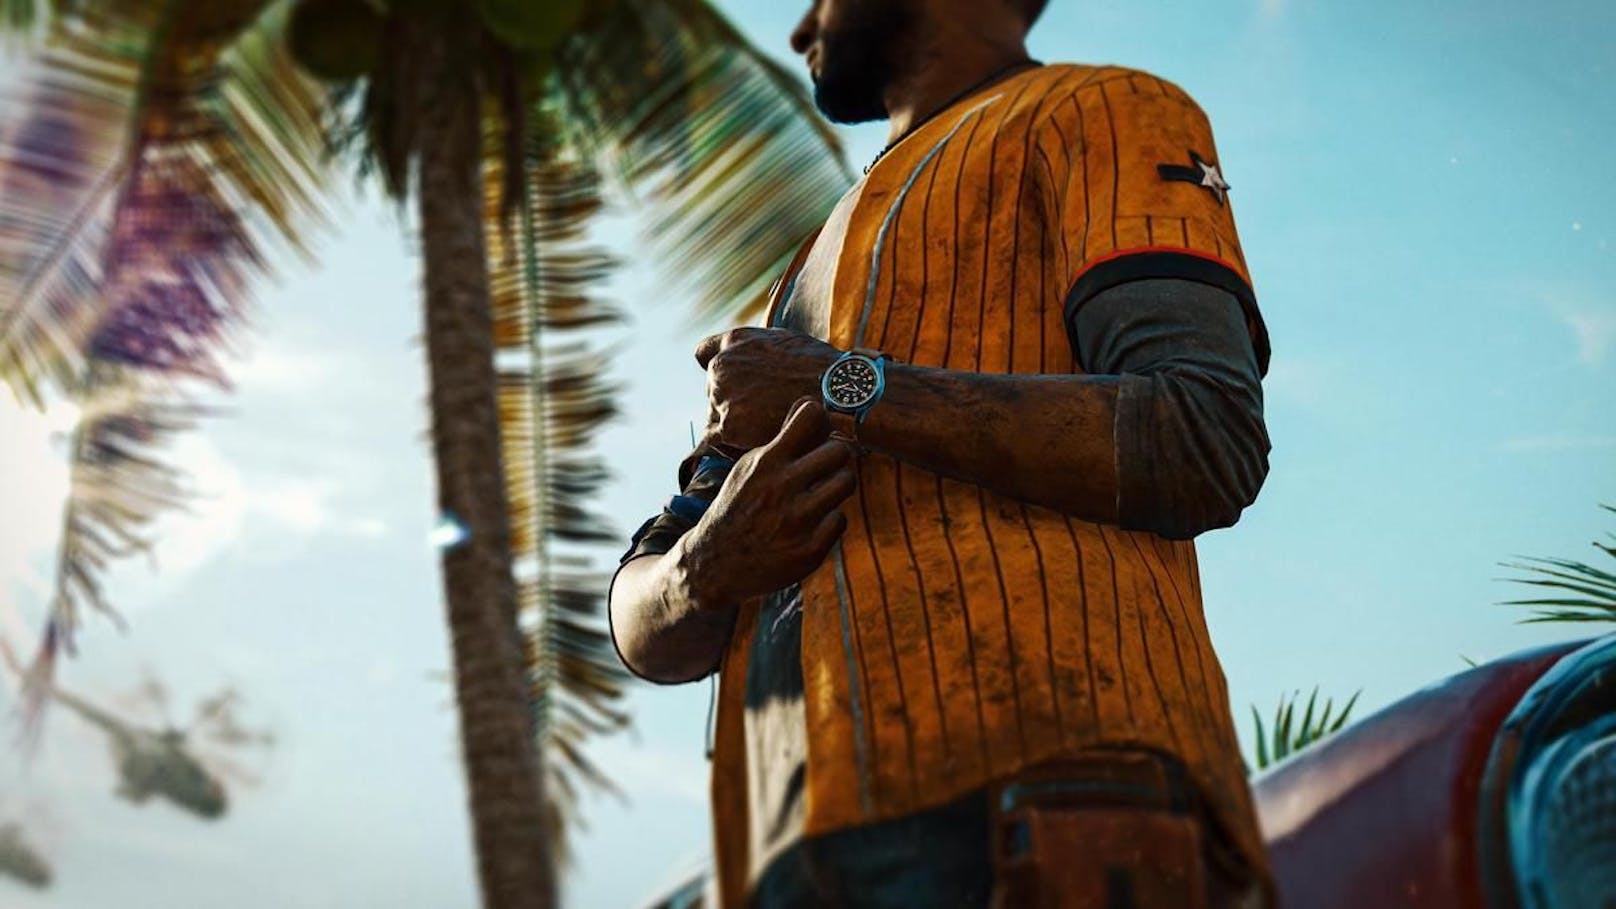 Freischalten kann man die Uhr in einer In-Game-Mission. "Far Cry 6" erscheint am 7. Oktober.